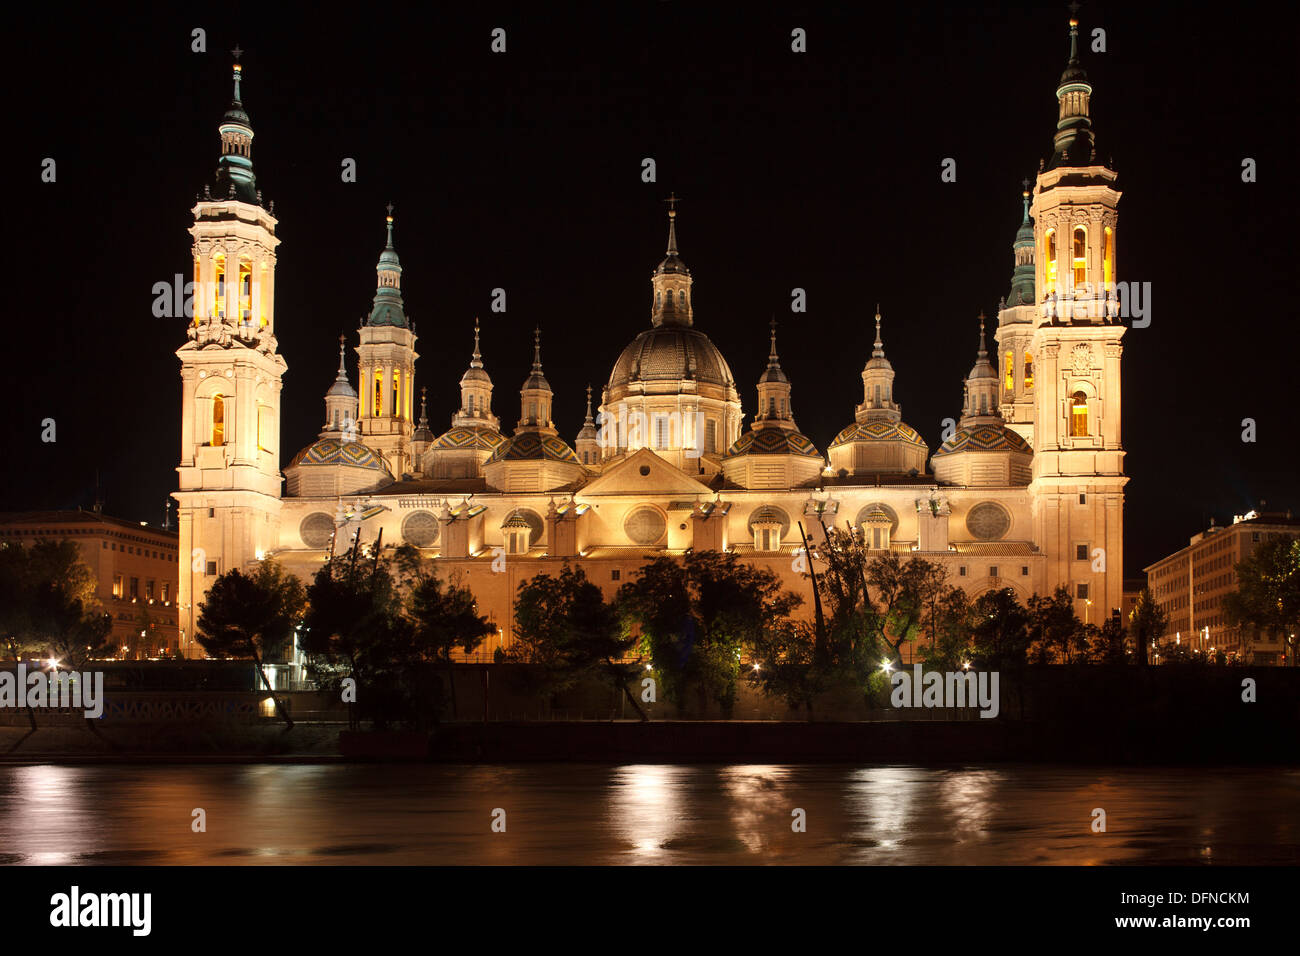 Basilica de Nuestra Senora del Pilar al fiume Ebro di notte, Saragozza, Saragozza, provincia di Zaragoza, Aragona, Spagna settentrionale, Foto Stock